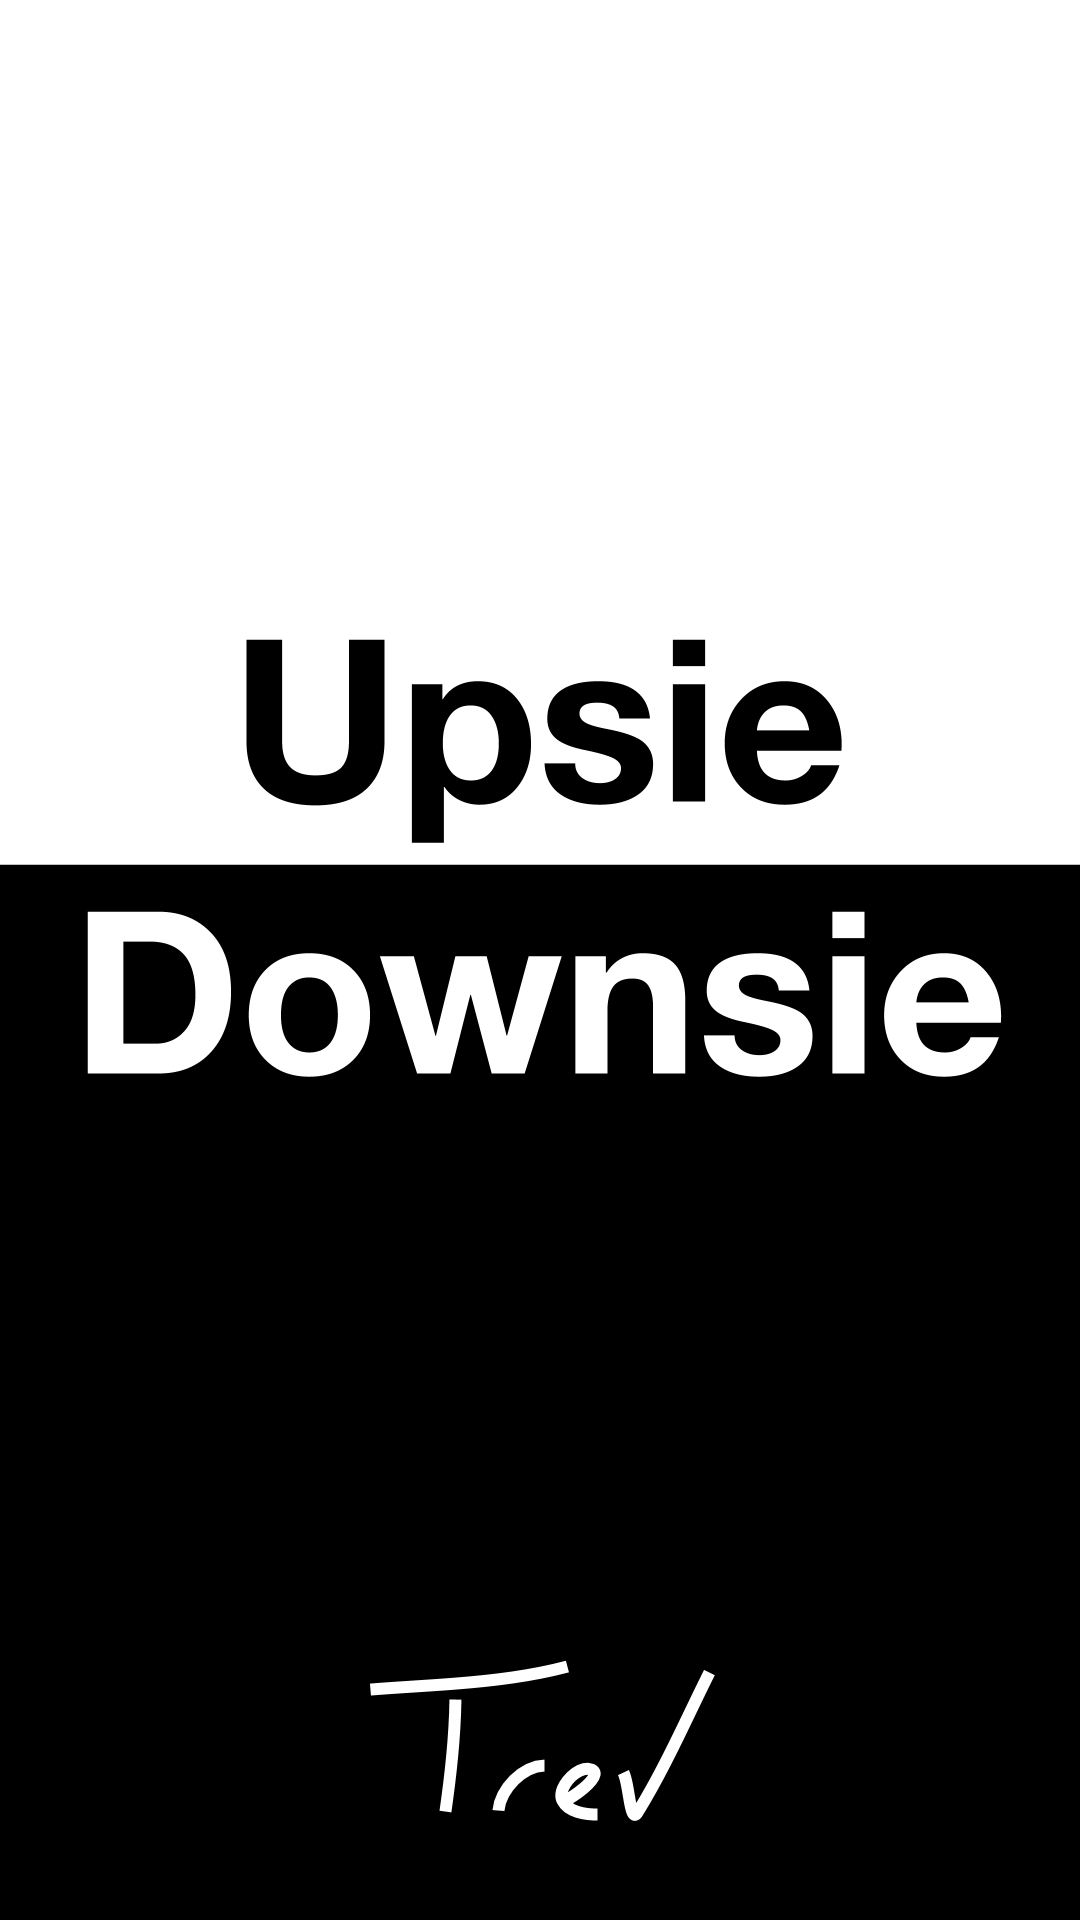 Upsie Downsie